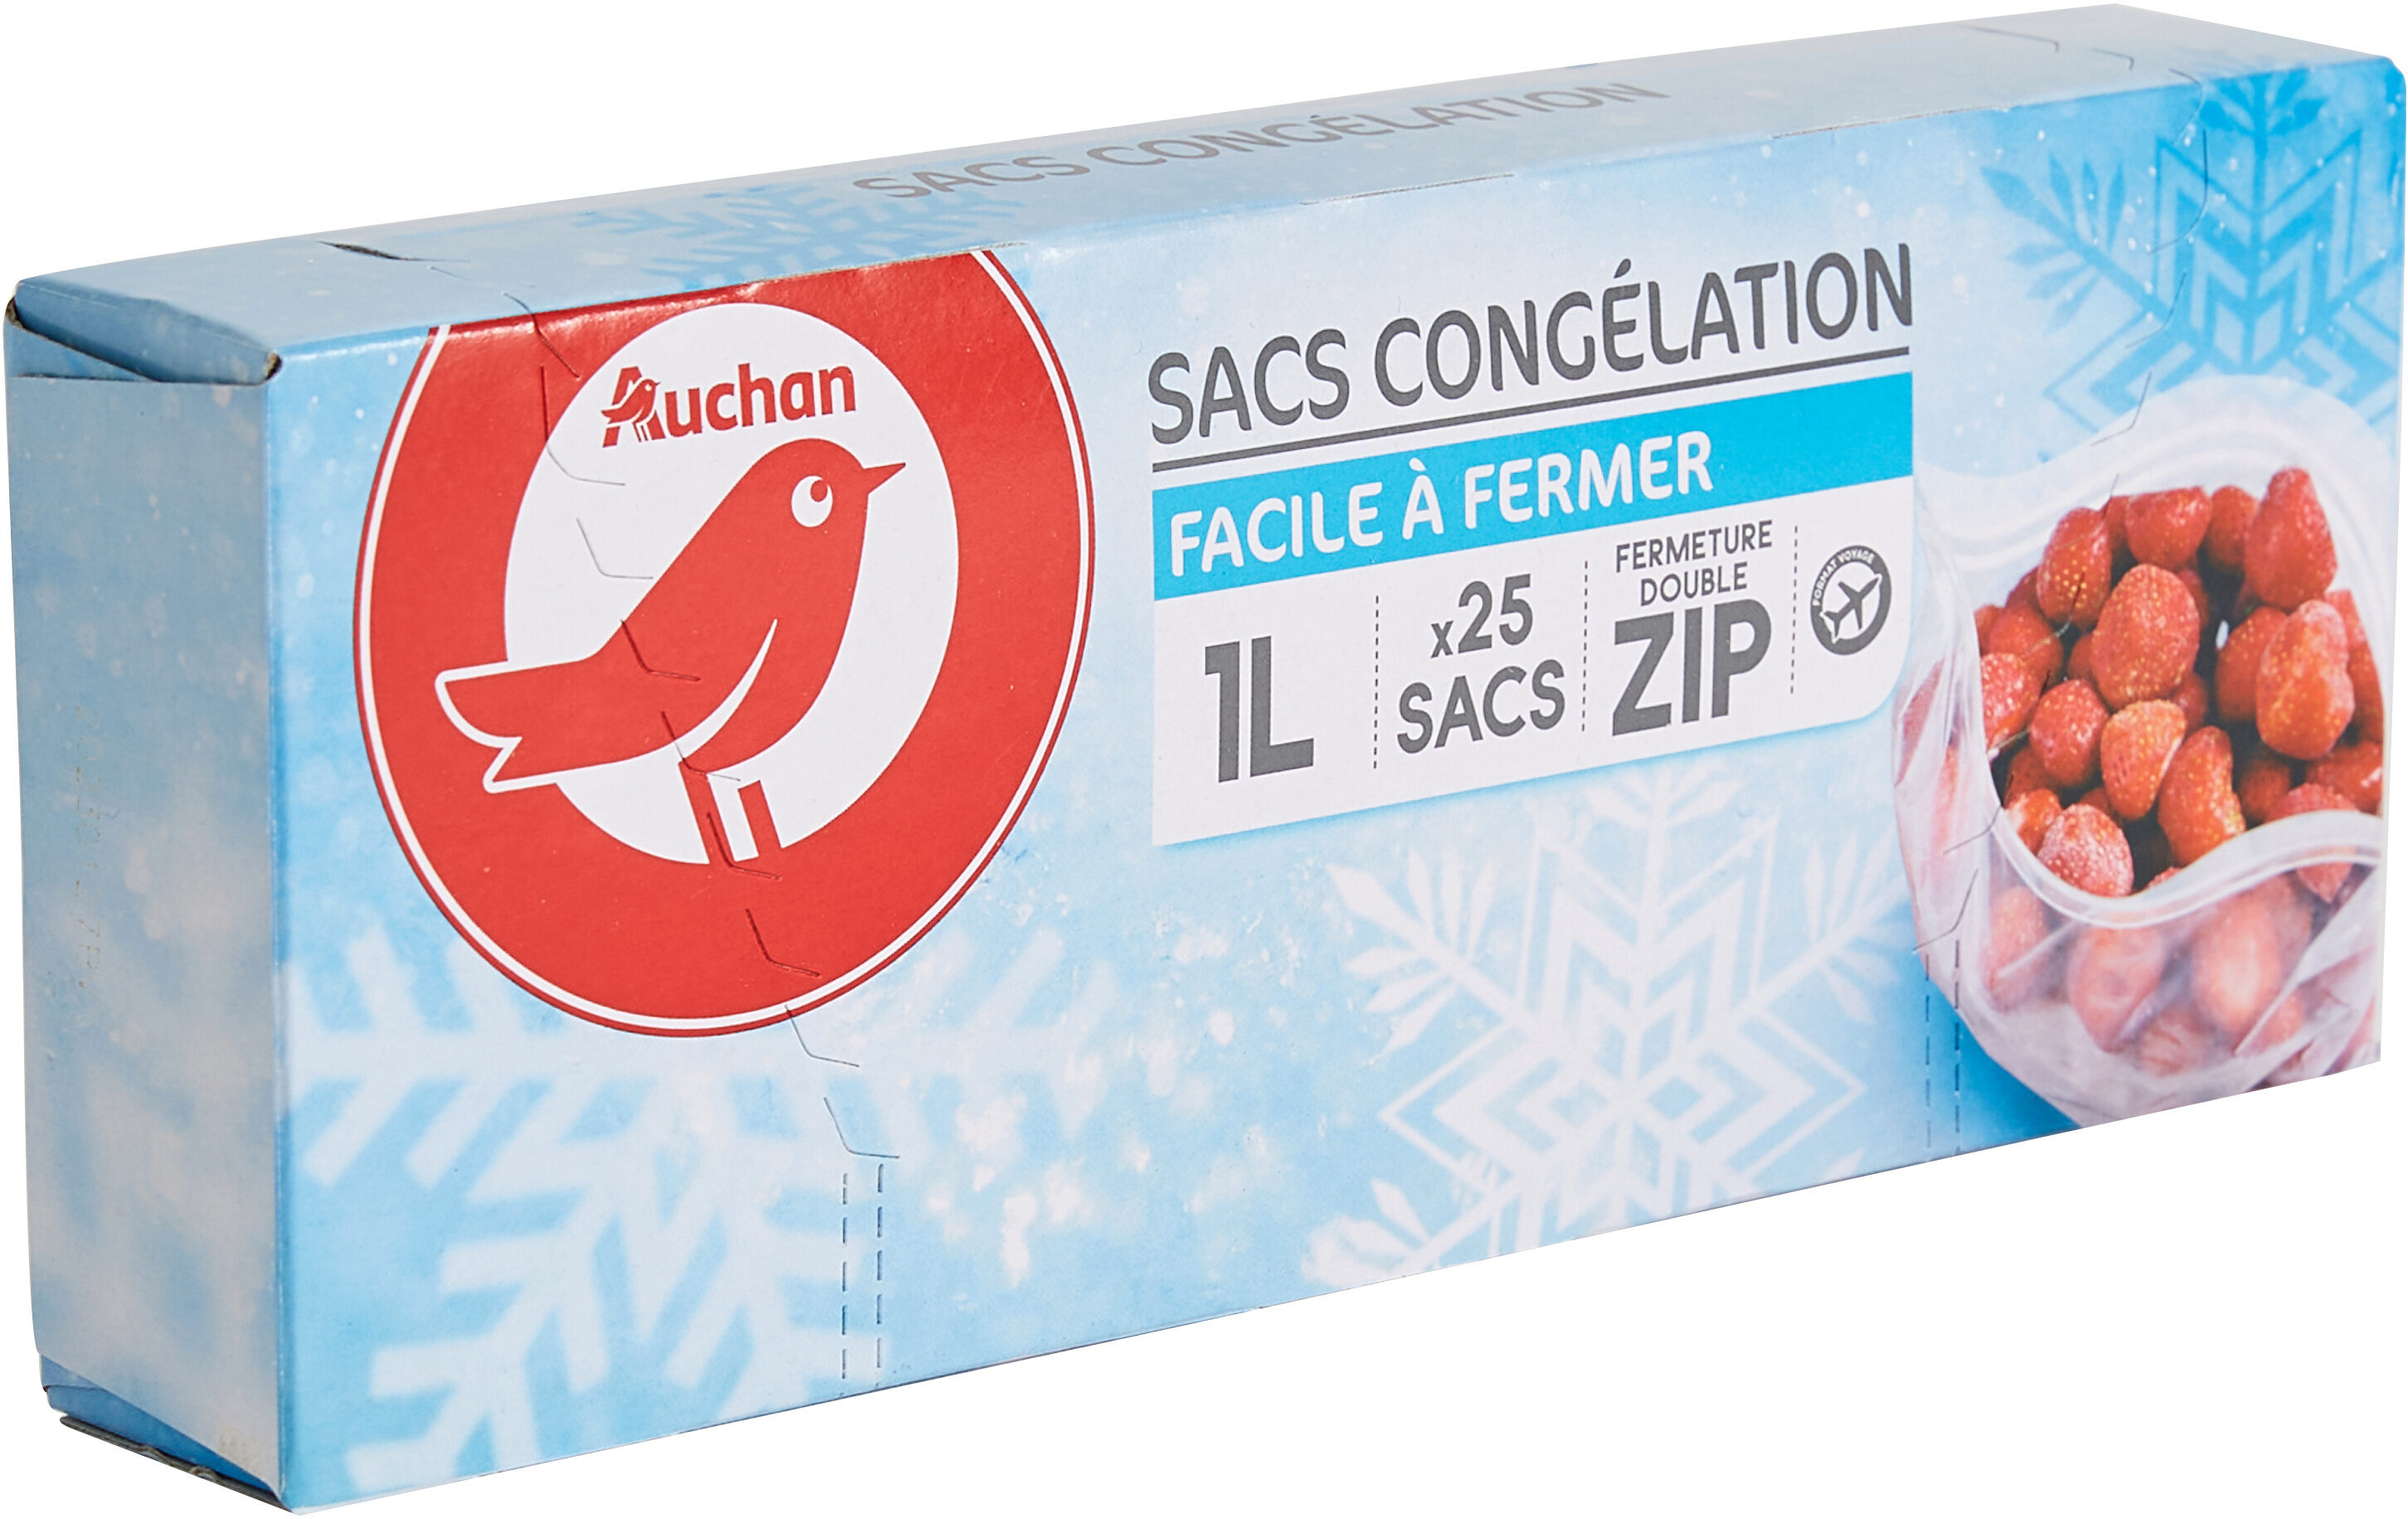 Sacs congélation fermeture double ZIP 1L - Produit - fr